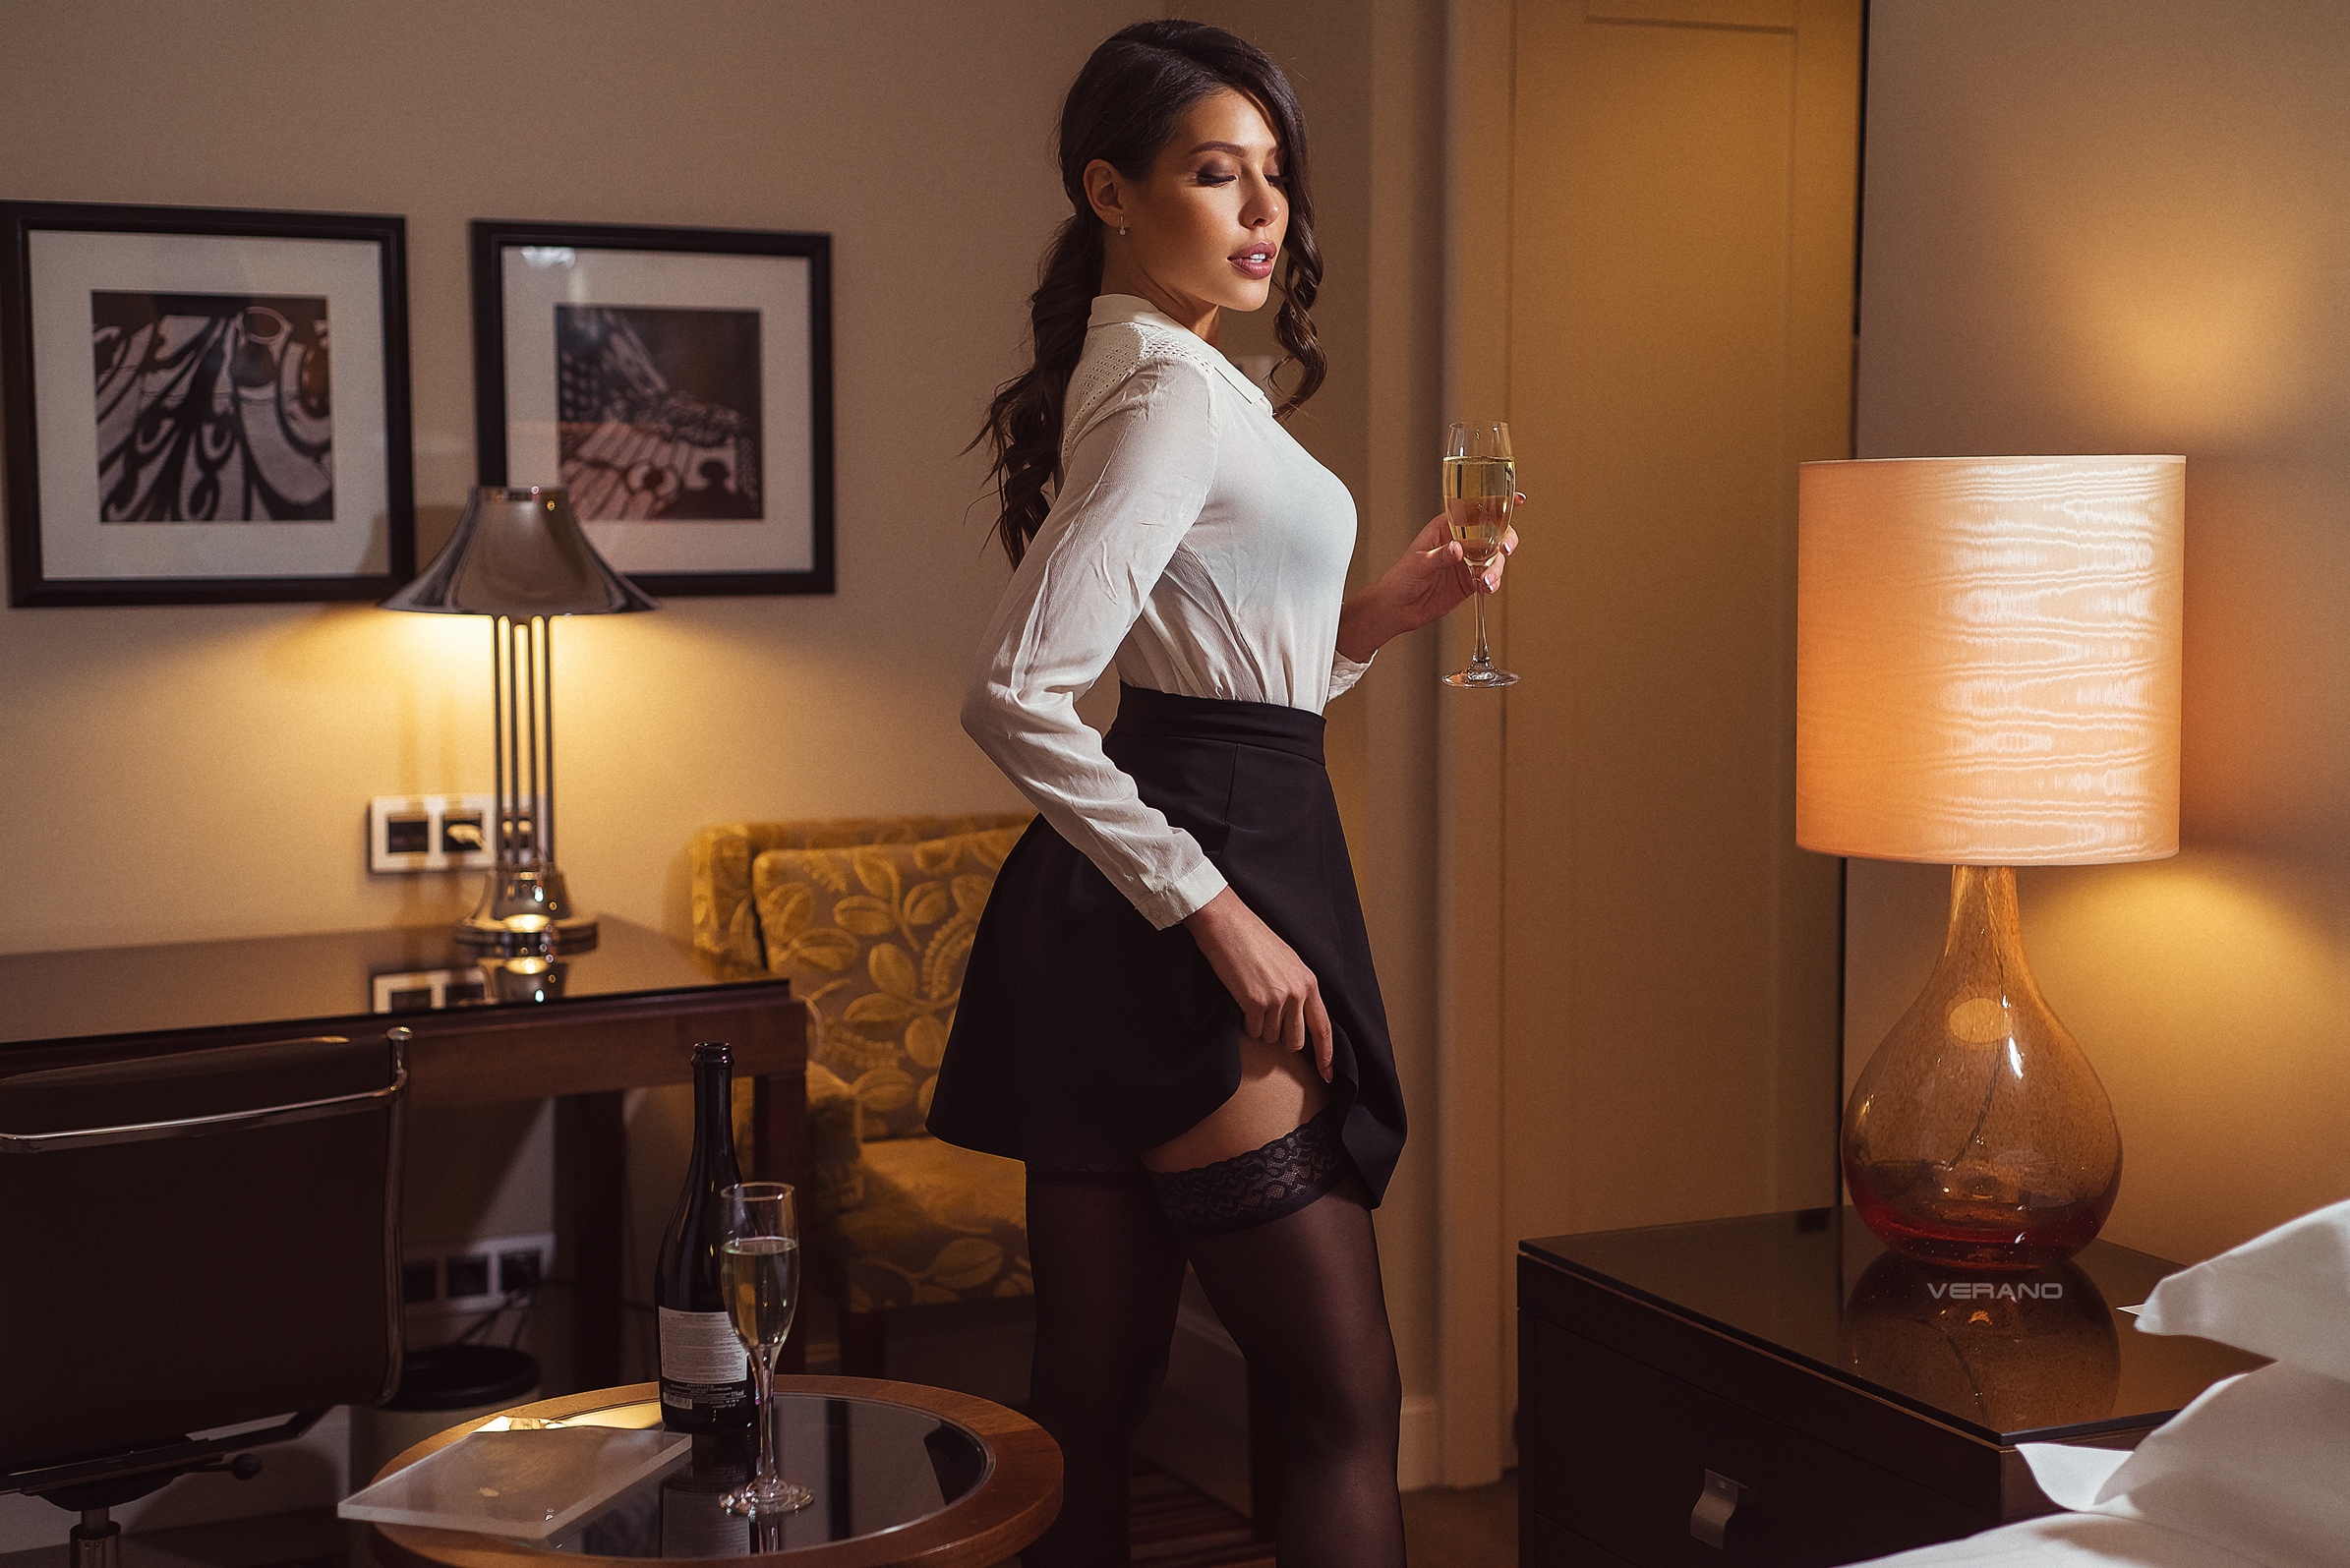 Women Model Brunette Long Hair Ponytail Drinking Glass Champagne Lamp Picture Frames Shirt Skirt Bla 2390x1595